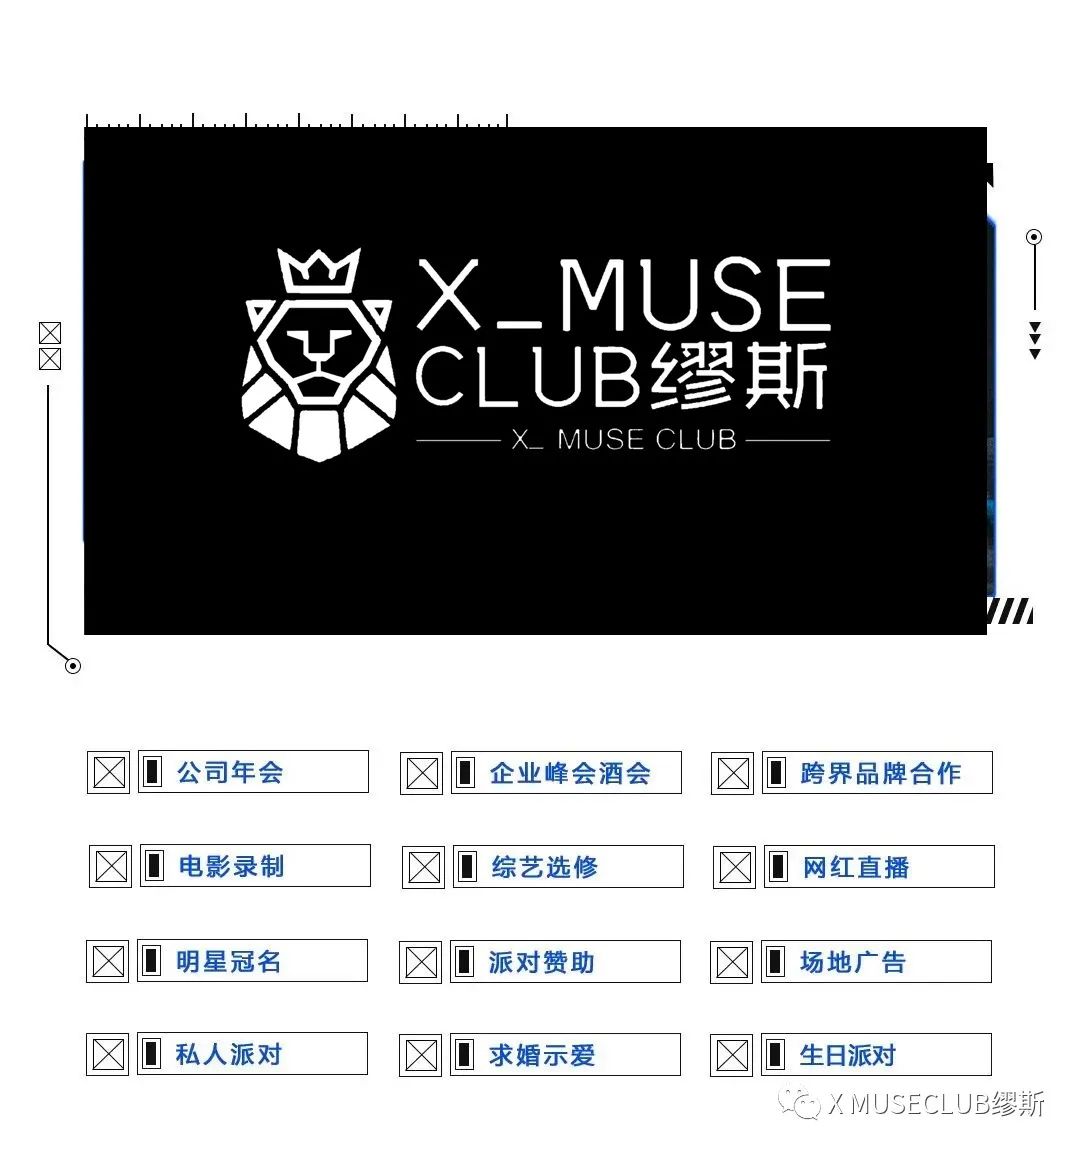 # 跨界联盟 # |品牌合作 · 场地租赁-成县缪斯酒吧/X-MUSE CLUB